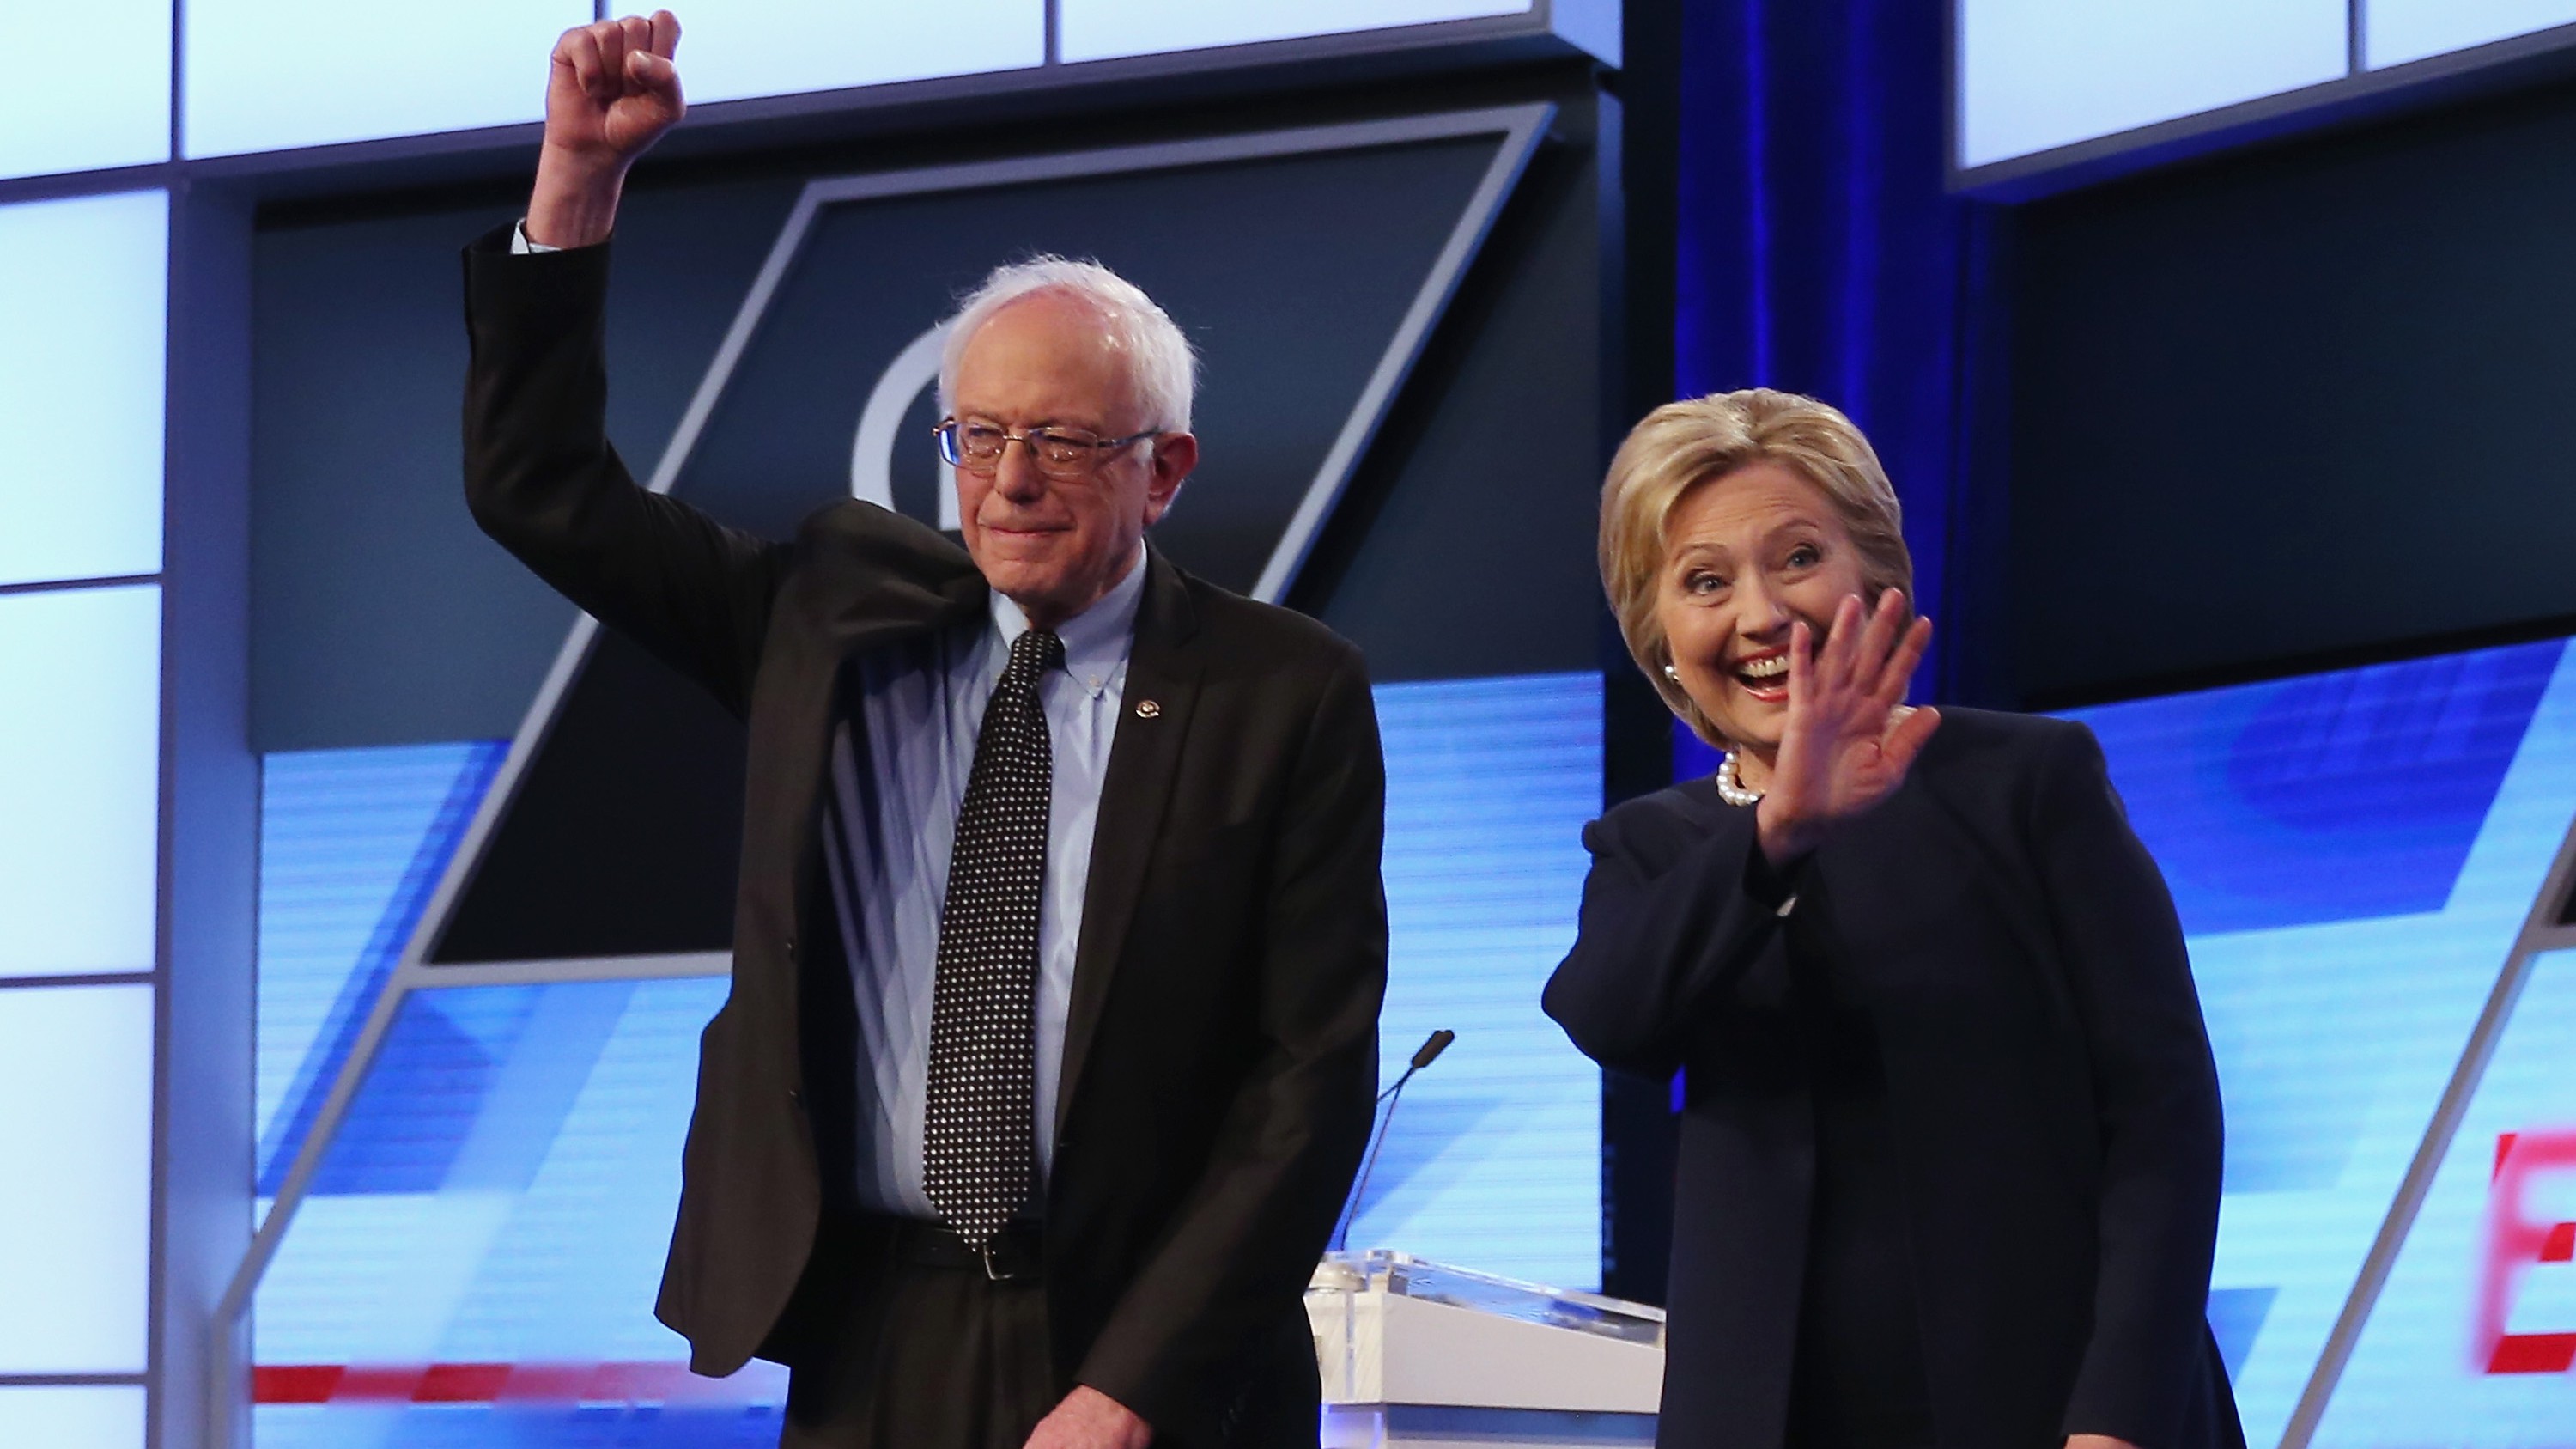 Bernie Sanders y Hillary Clinton participarán en un debate esta noche en Brooklyn, Nueva York. Tenemos todos los detalles del debate democrático de esta noche.